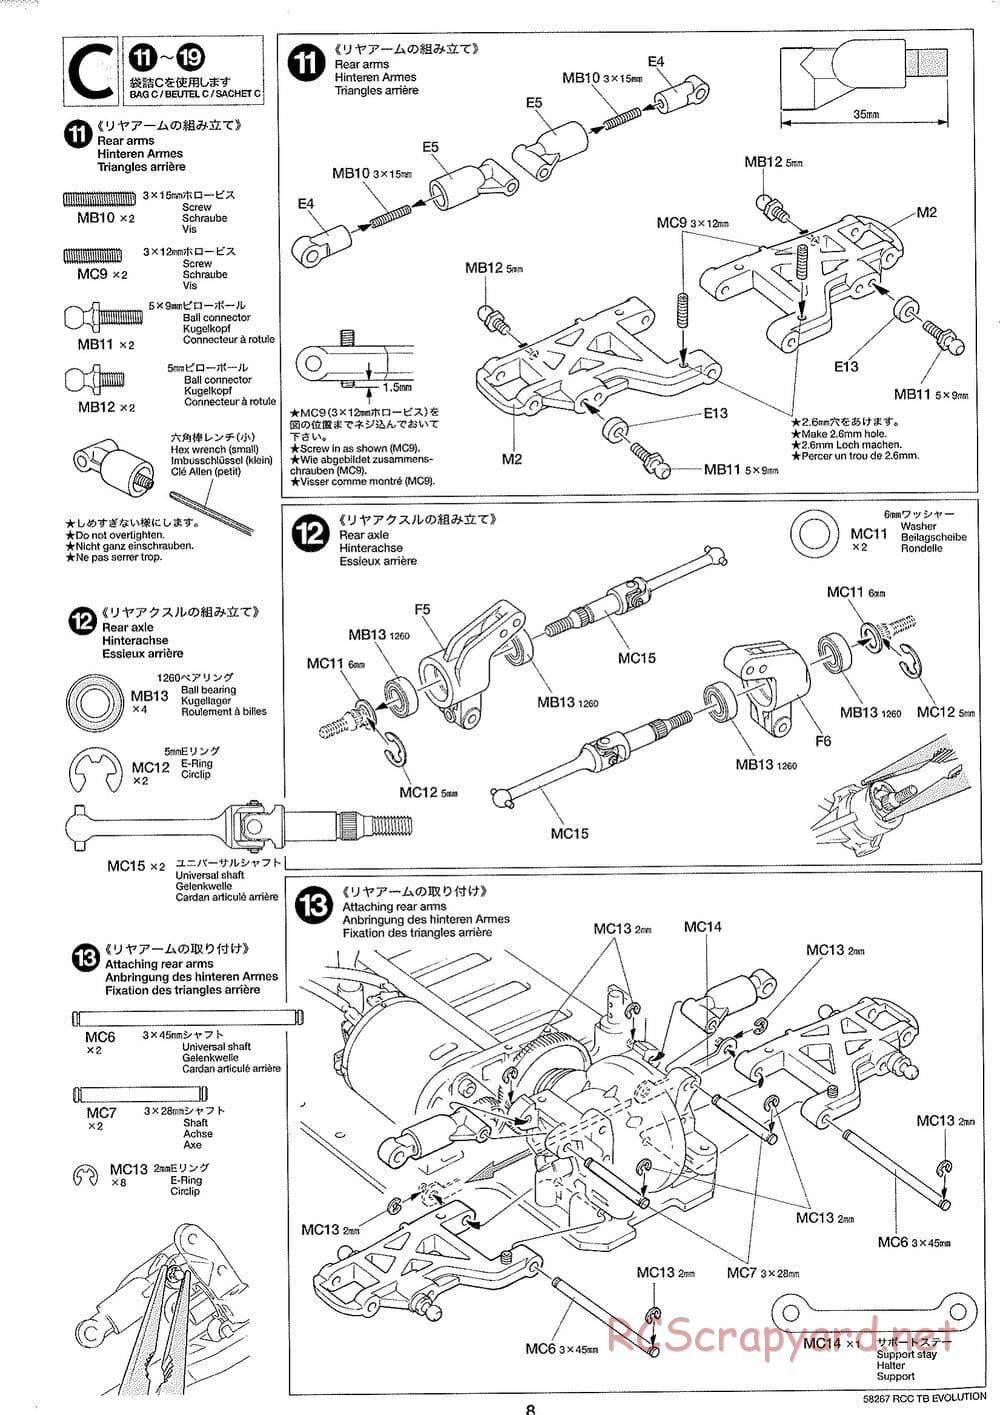 Tamiya - TB Evolution Chassis - Manual - Page 8